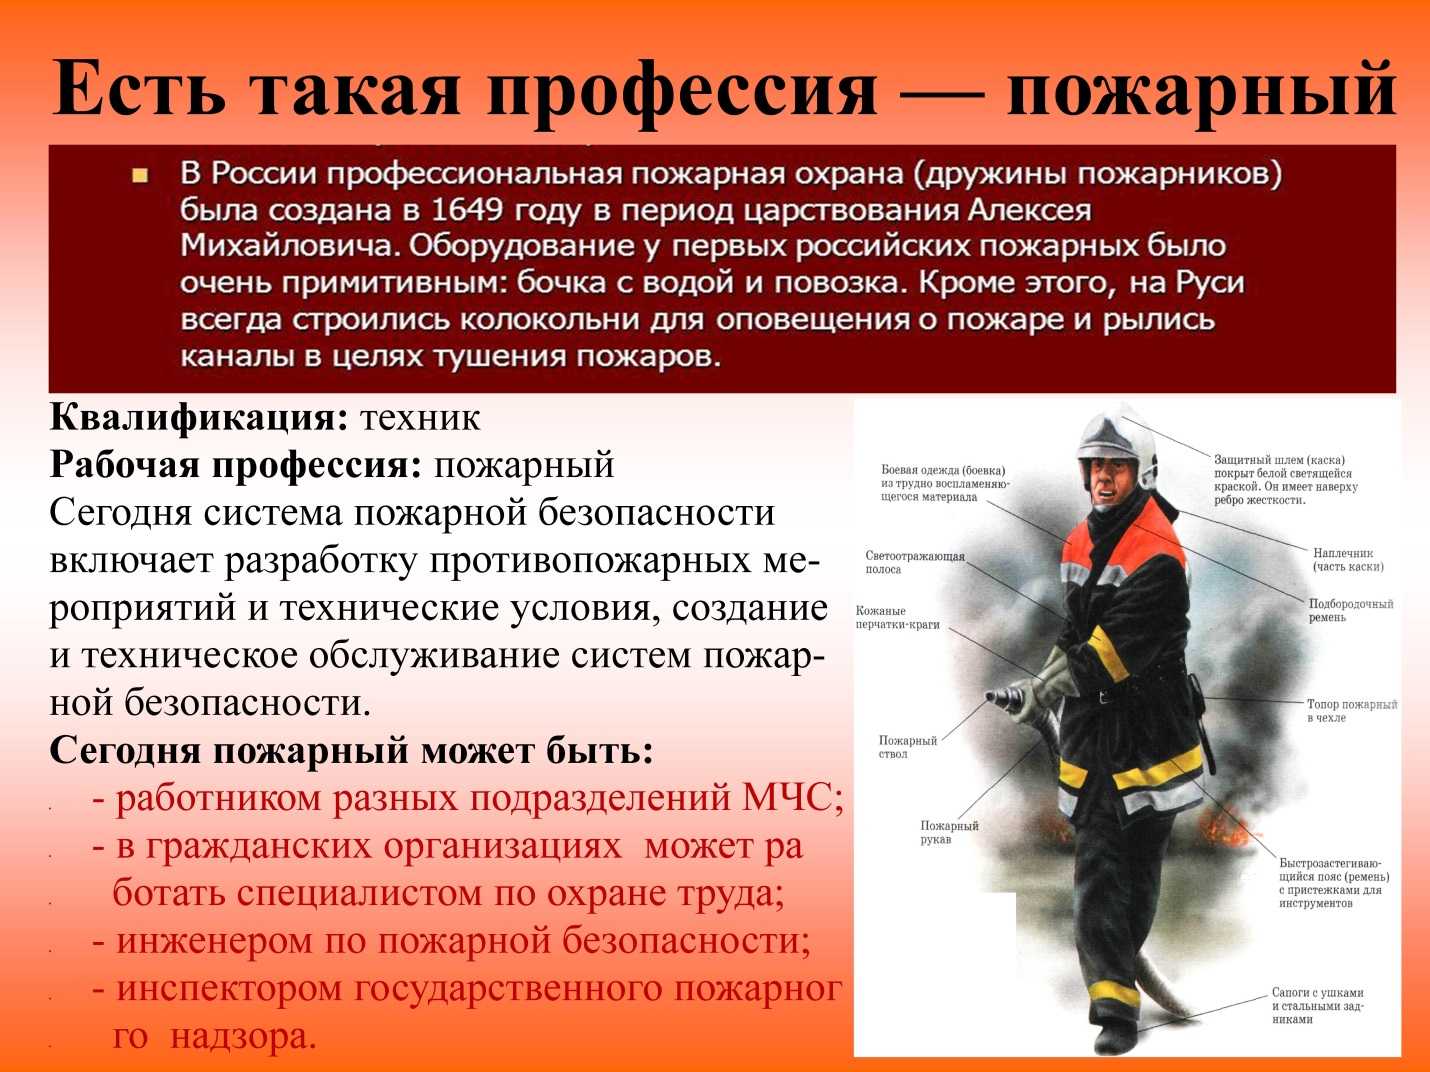 Пожарная служба является. Профессия пожарный. Сведения о профессии пожарного. Описать профессию пожарного. Интересные факты о пожарных.